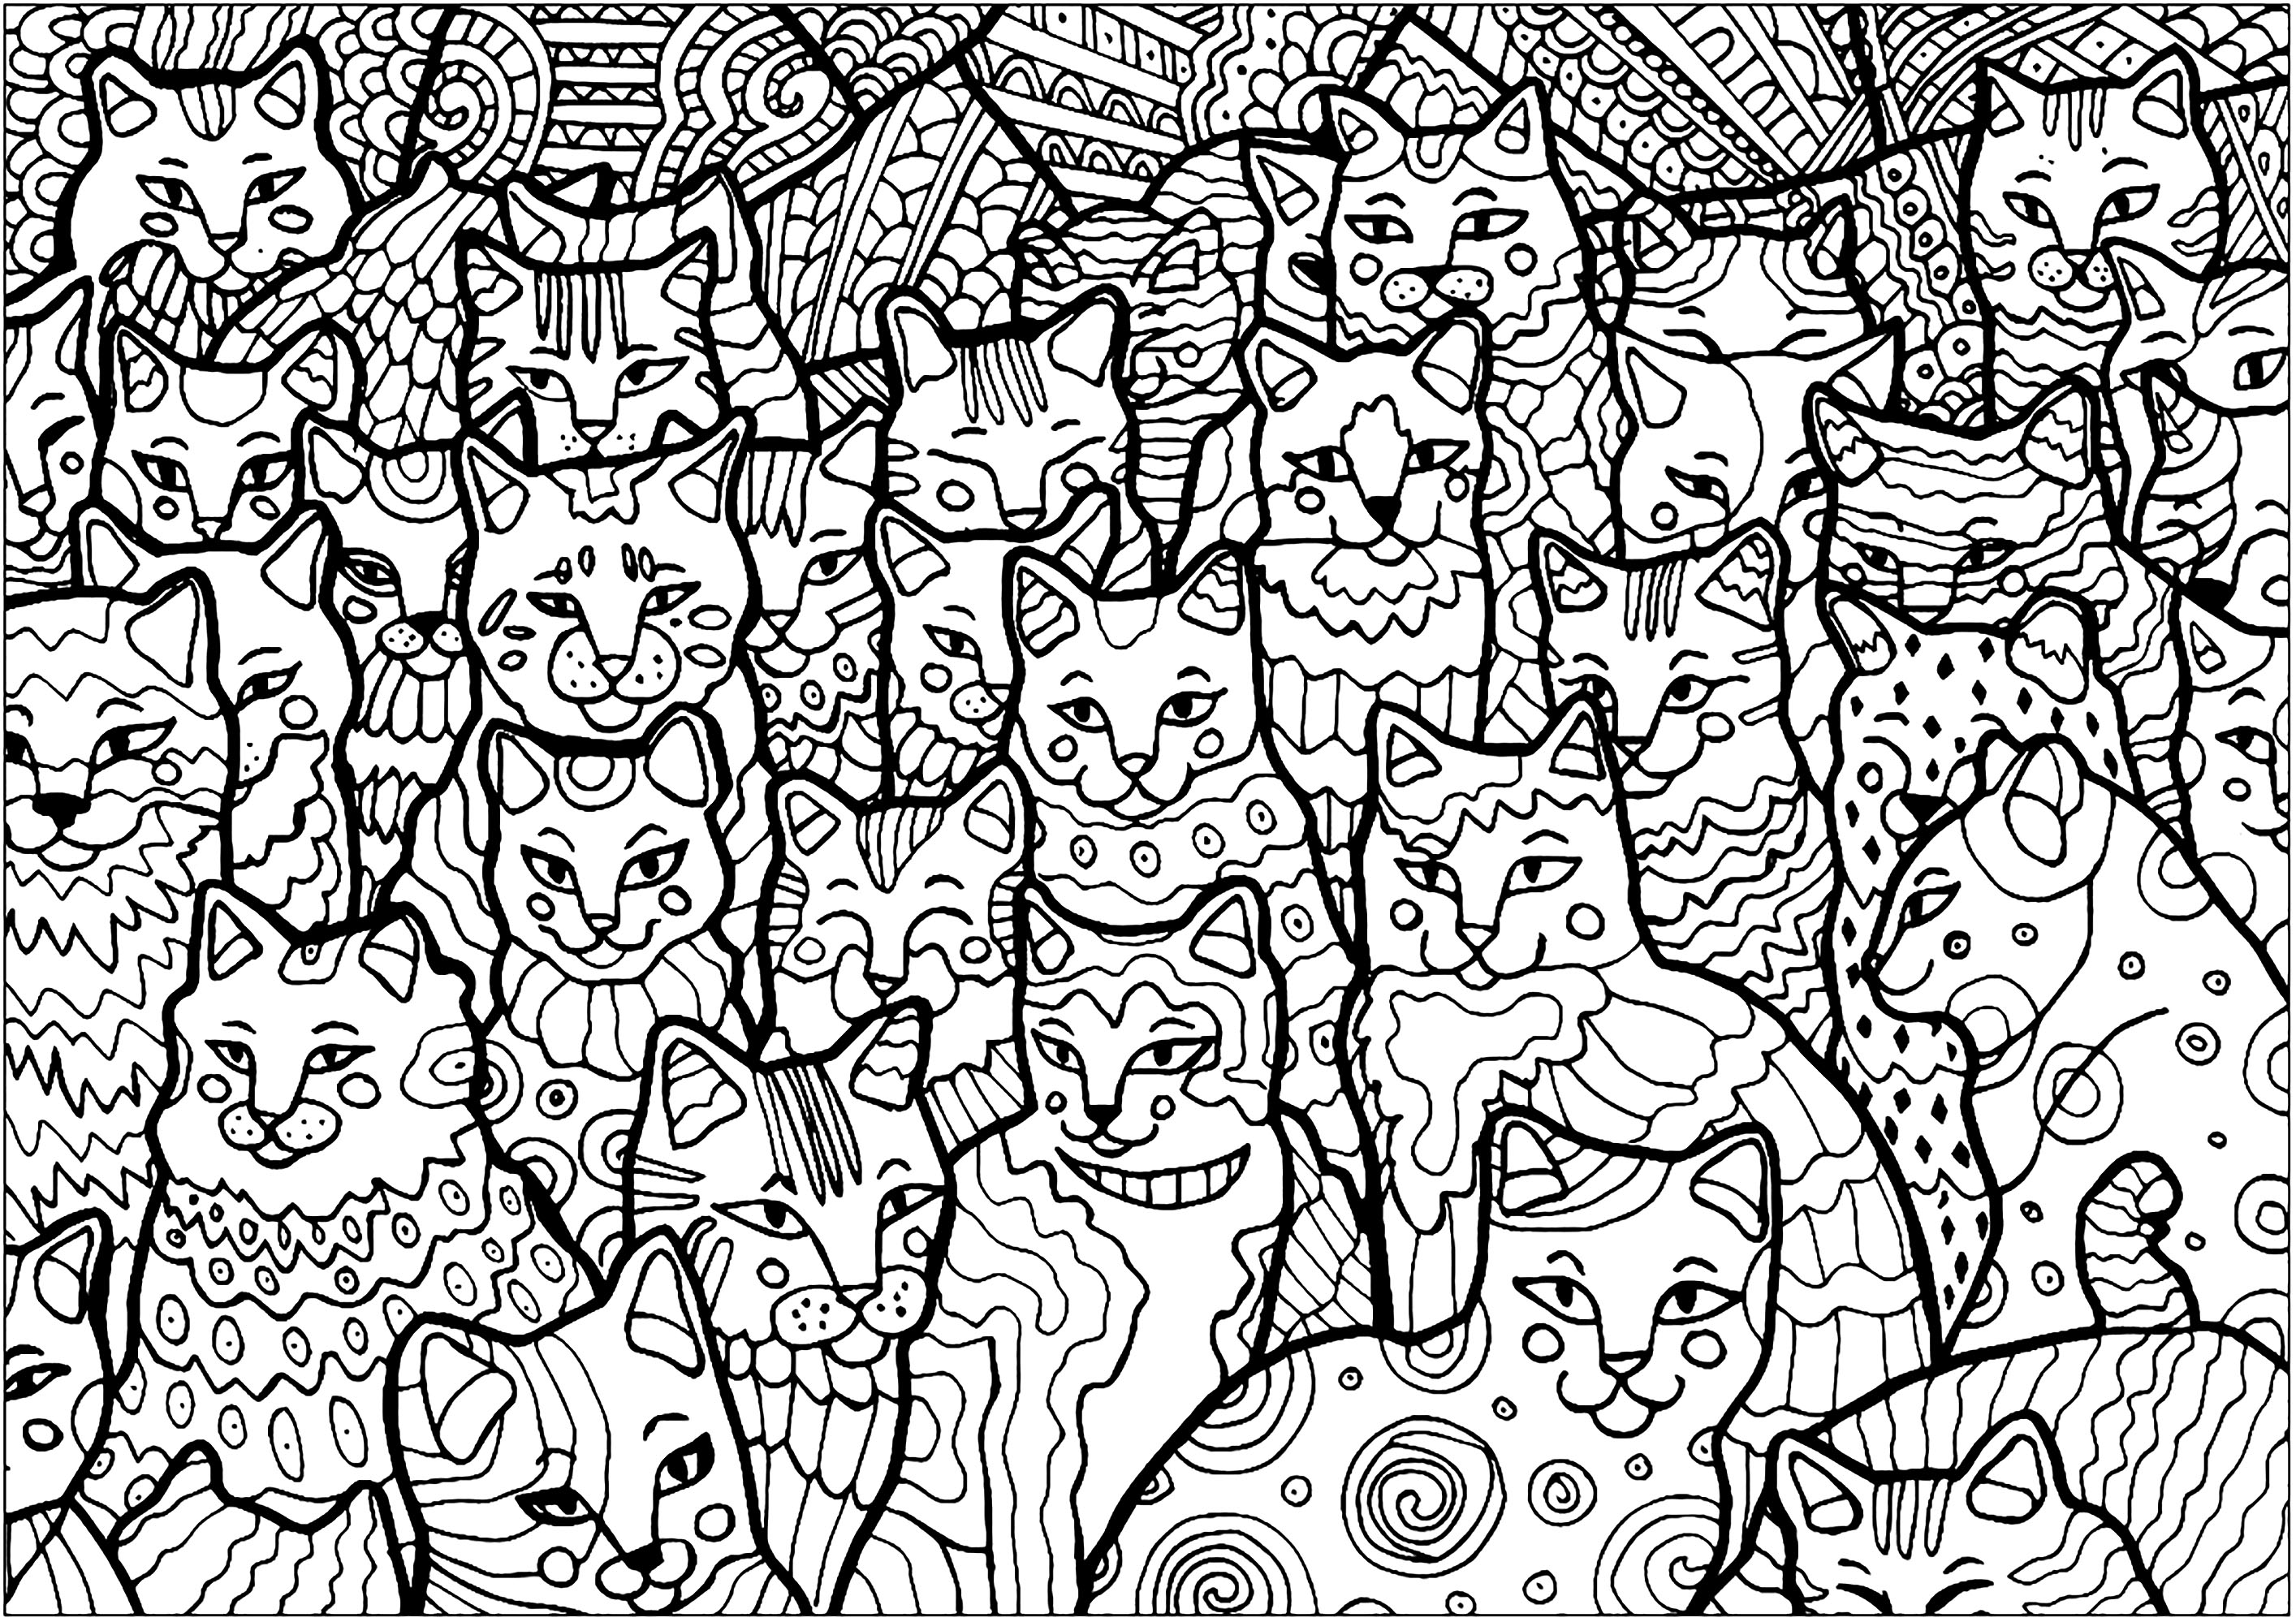 Diese Katzen nehmen die ganze Seite ein, es liegt an dir, sie auszumalen!. Ein ziemlich komplexes Kolorit, voller Details ... und Katzen!